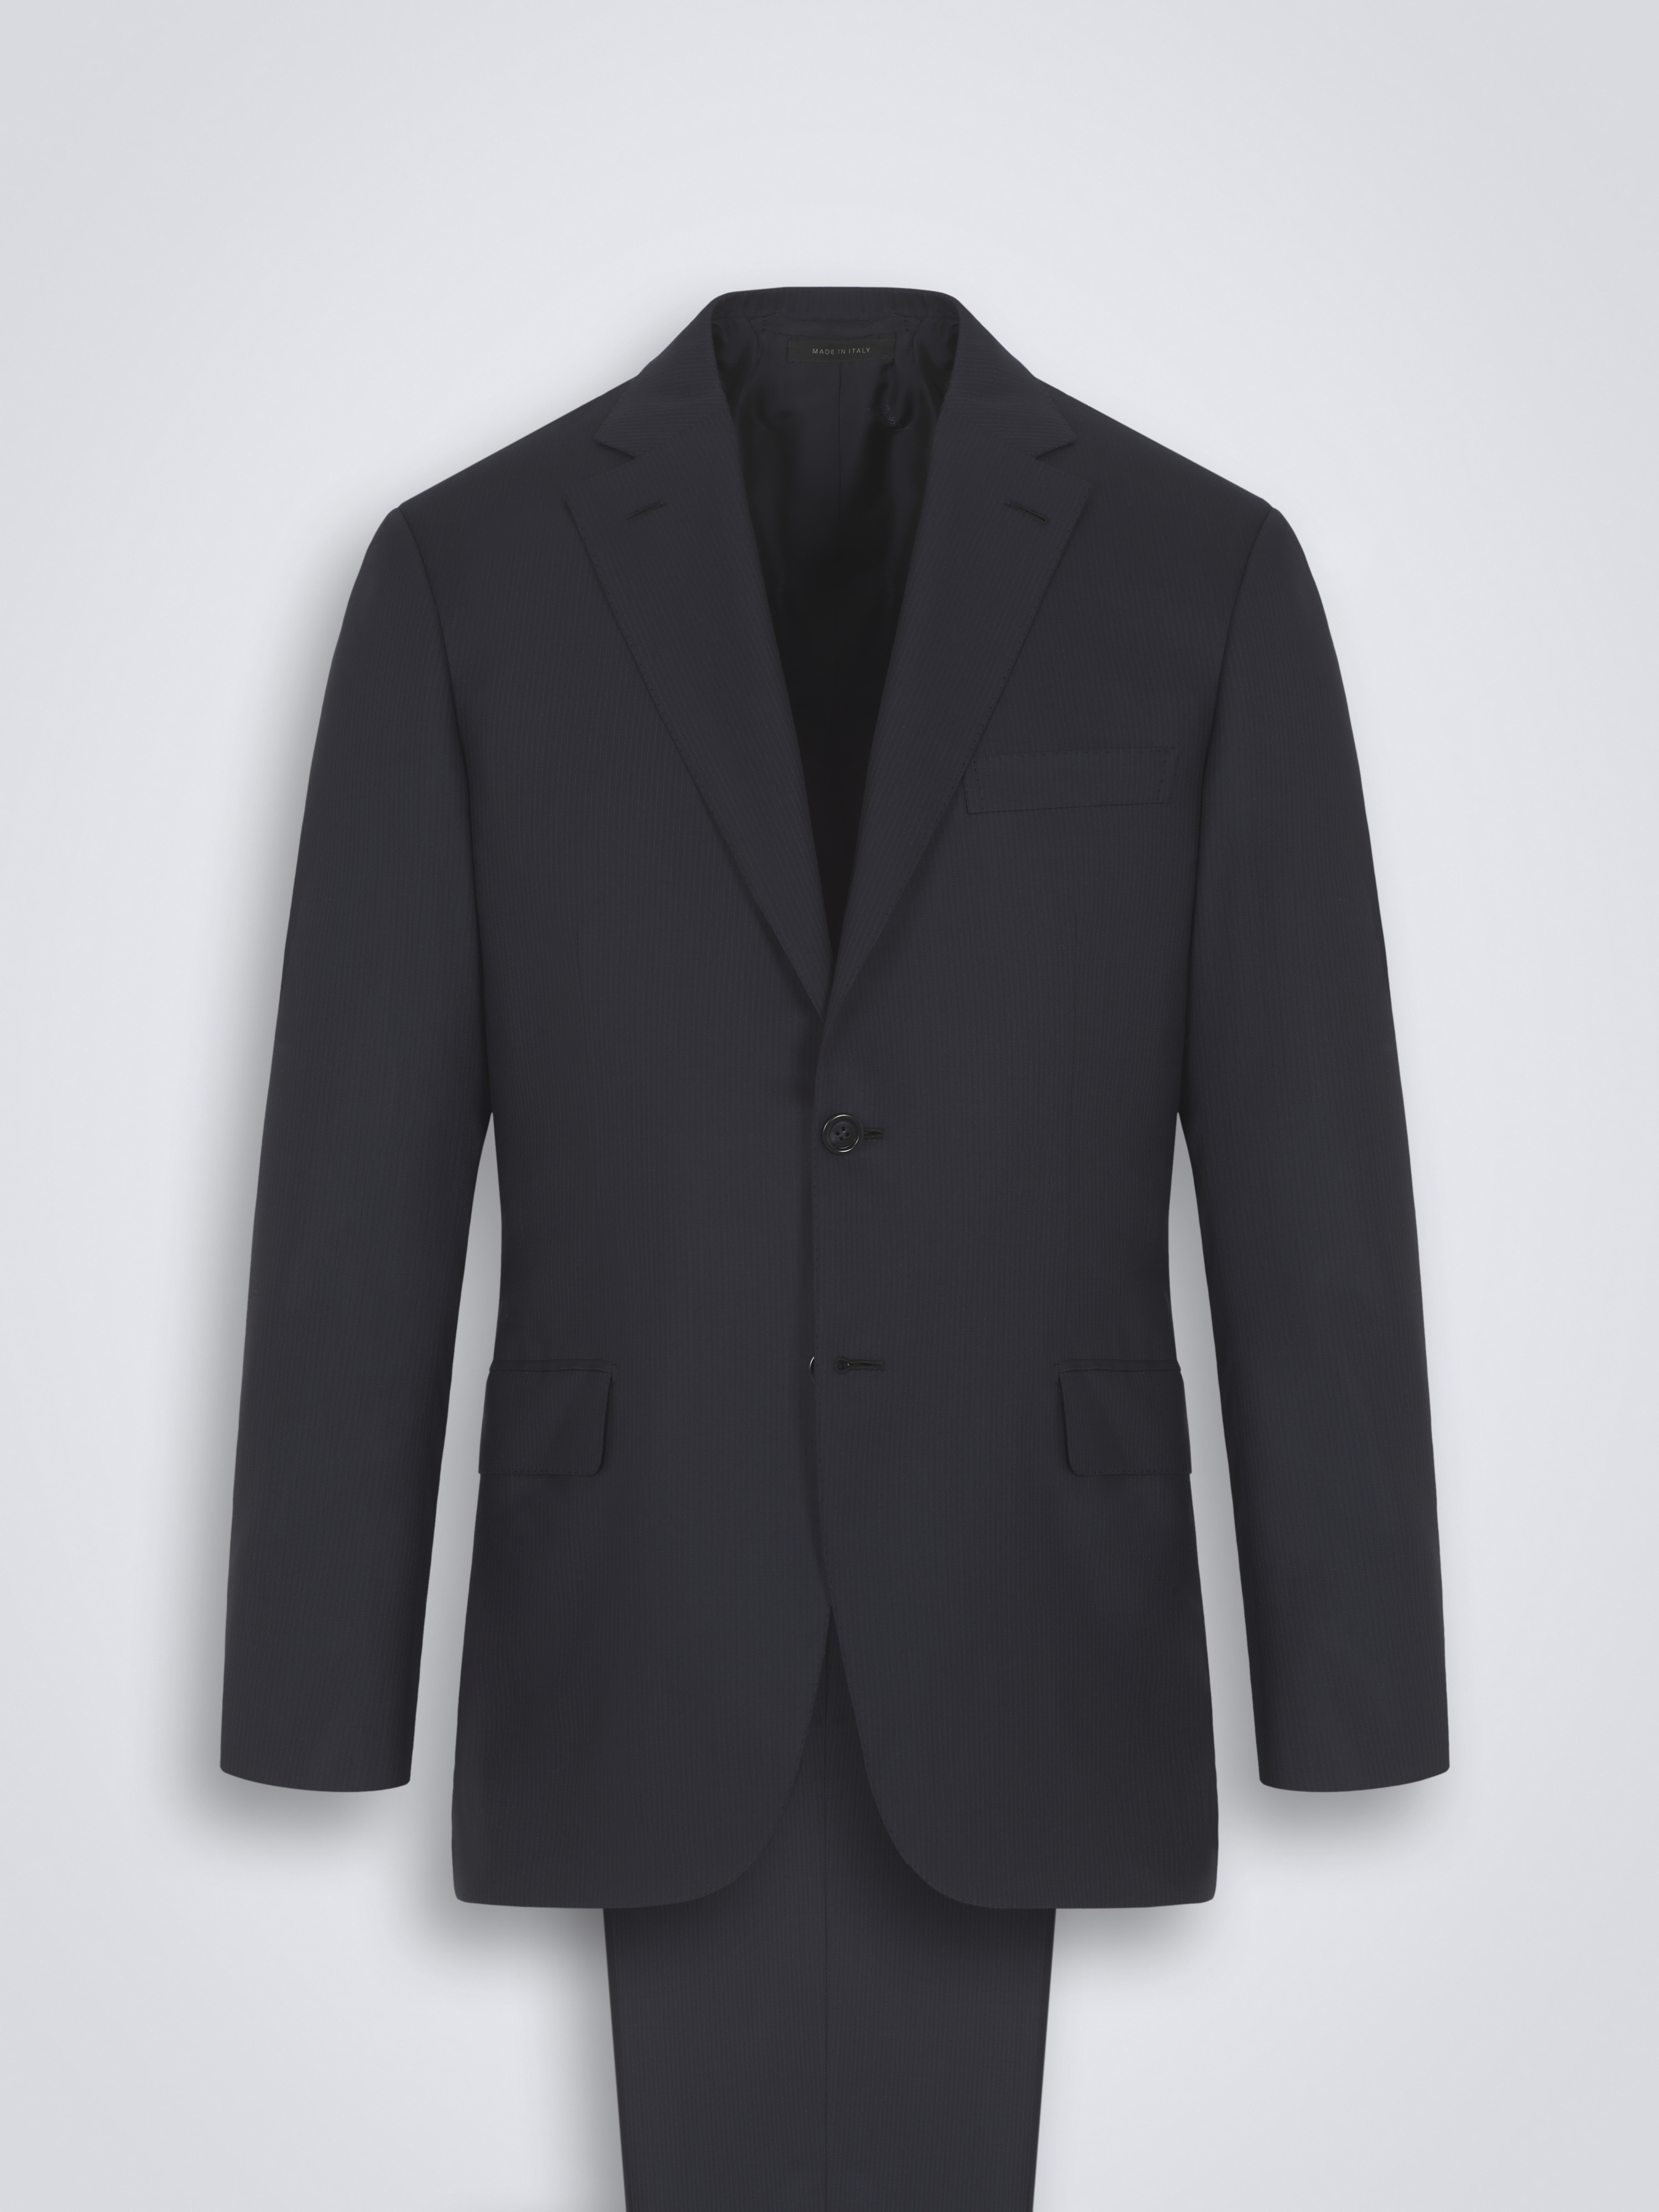 BRIONI ブリオーニ スーツ セットアップ 2P スーパ−170 RA0GOL MADISON ウール キュプラ ネイビー 美品  41831約185cm袖丈